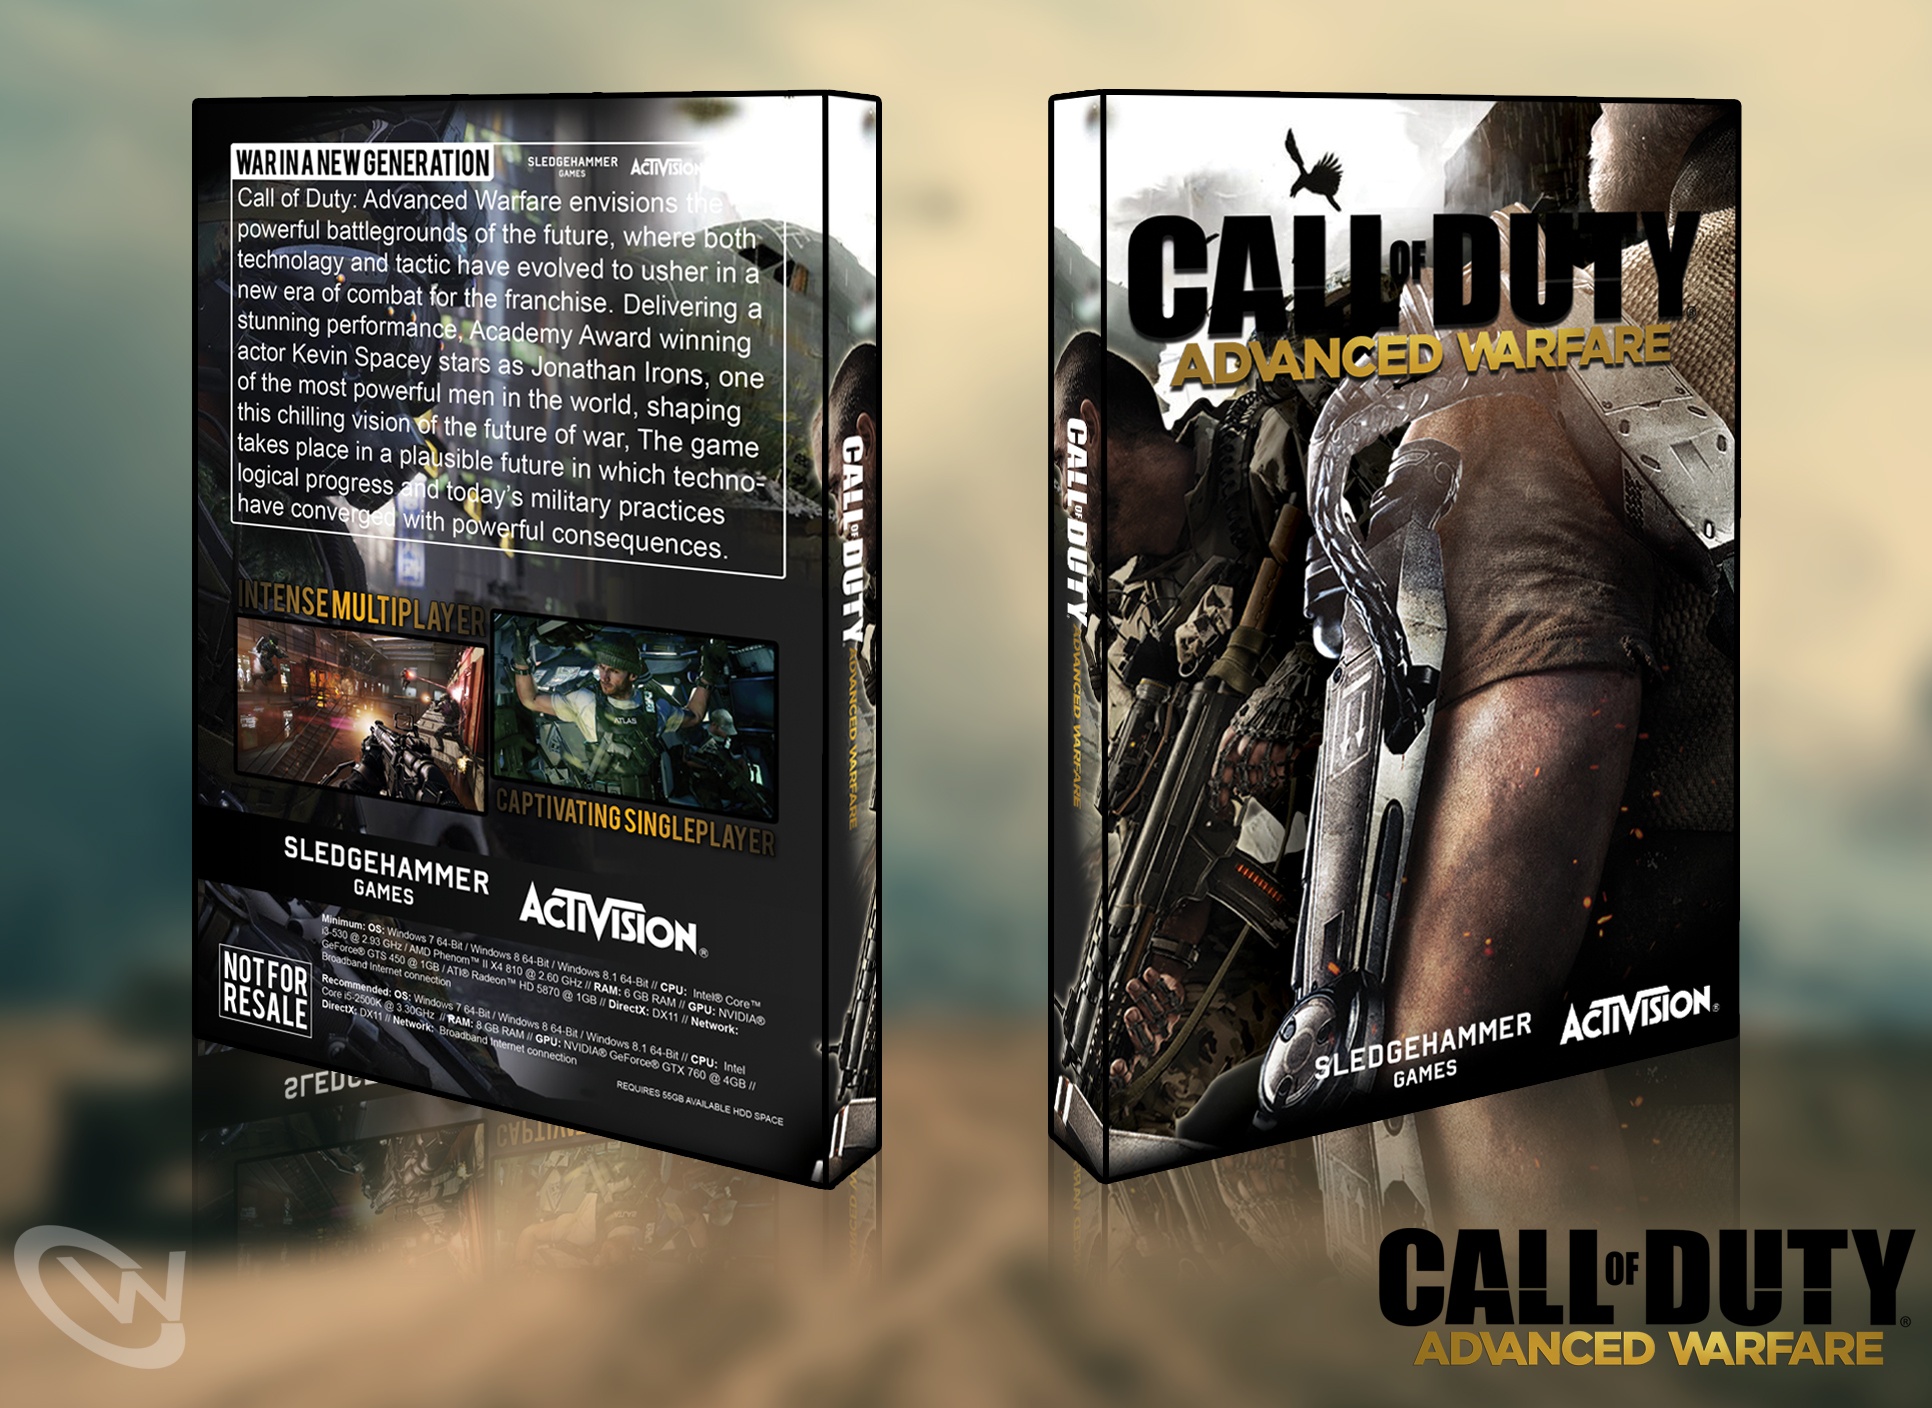 Call of Duty: Advanced Warfare box cover